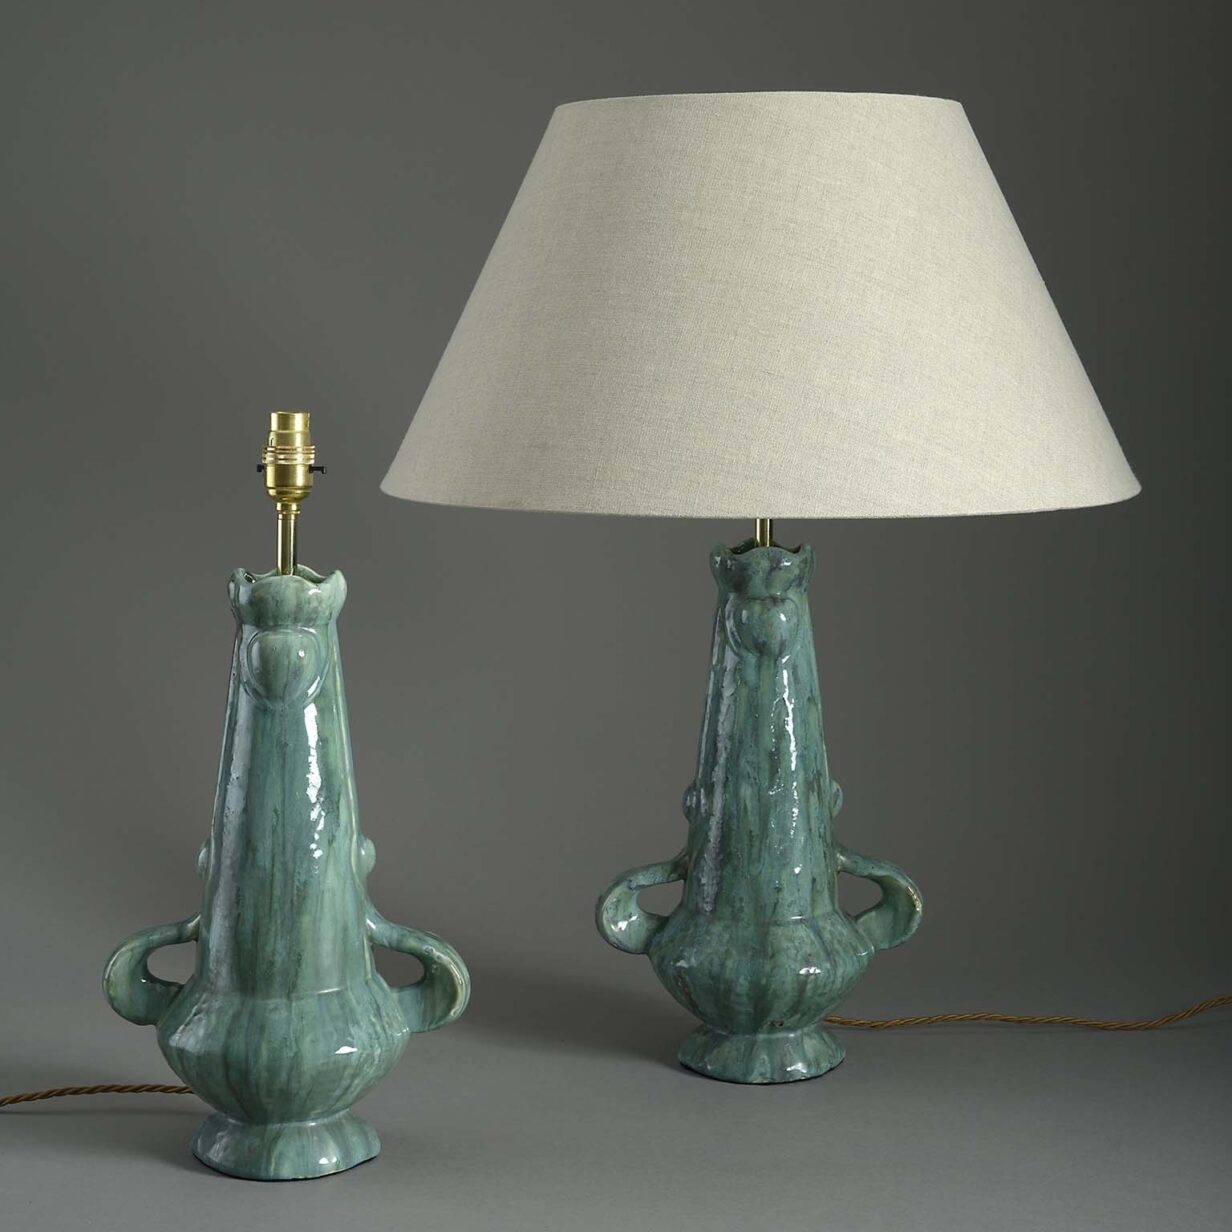 Pair of art nouveau pottery vase lamps